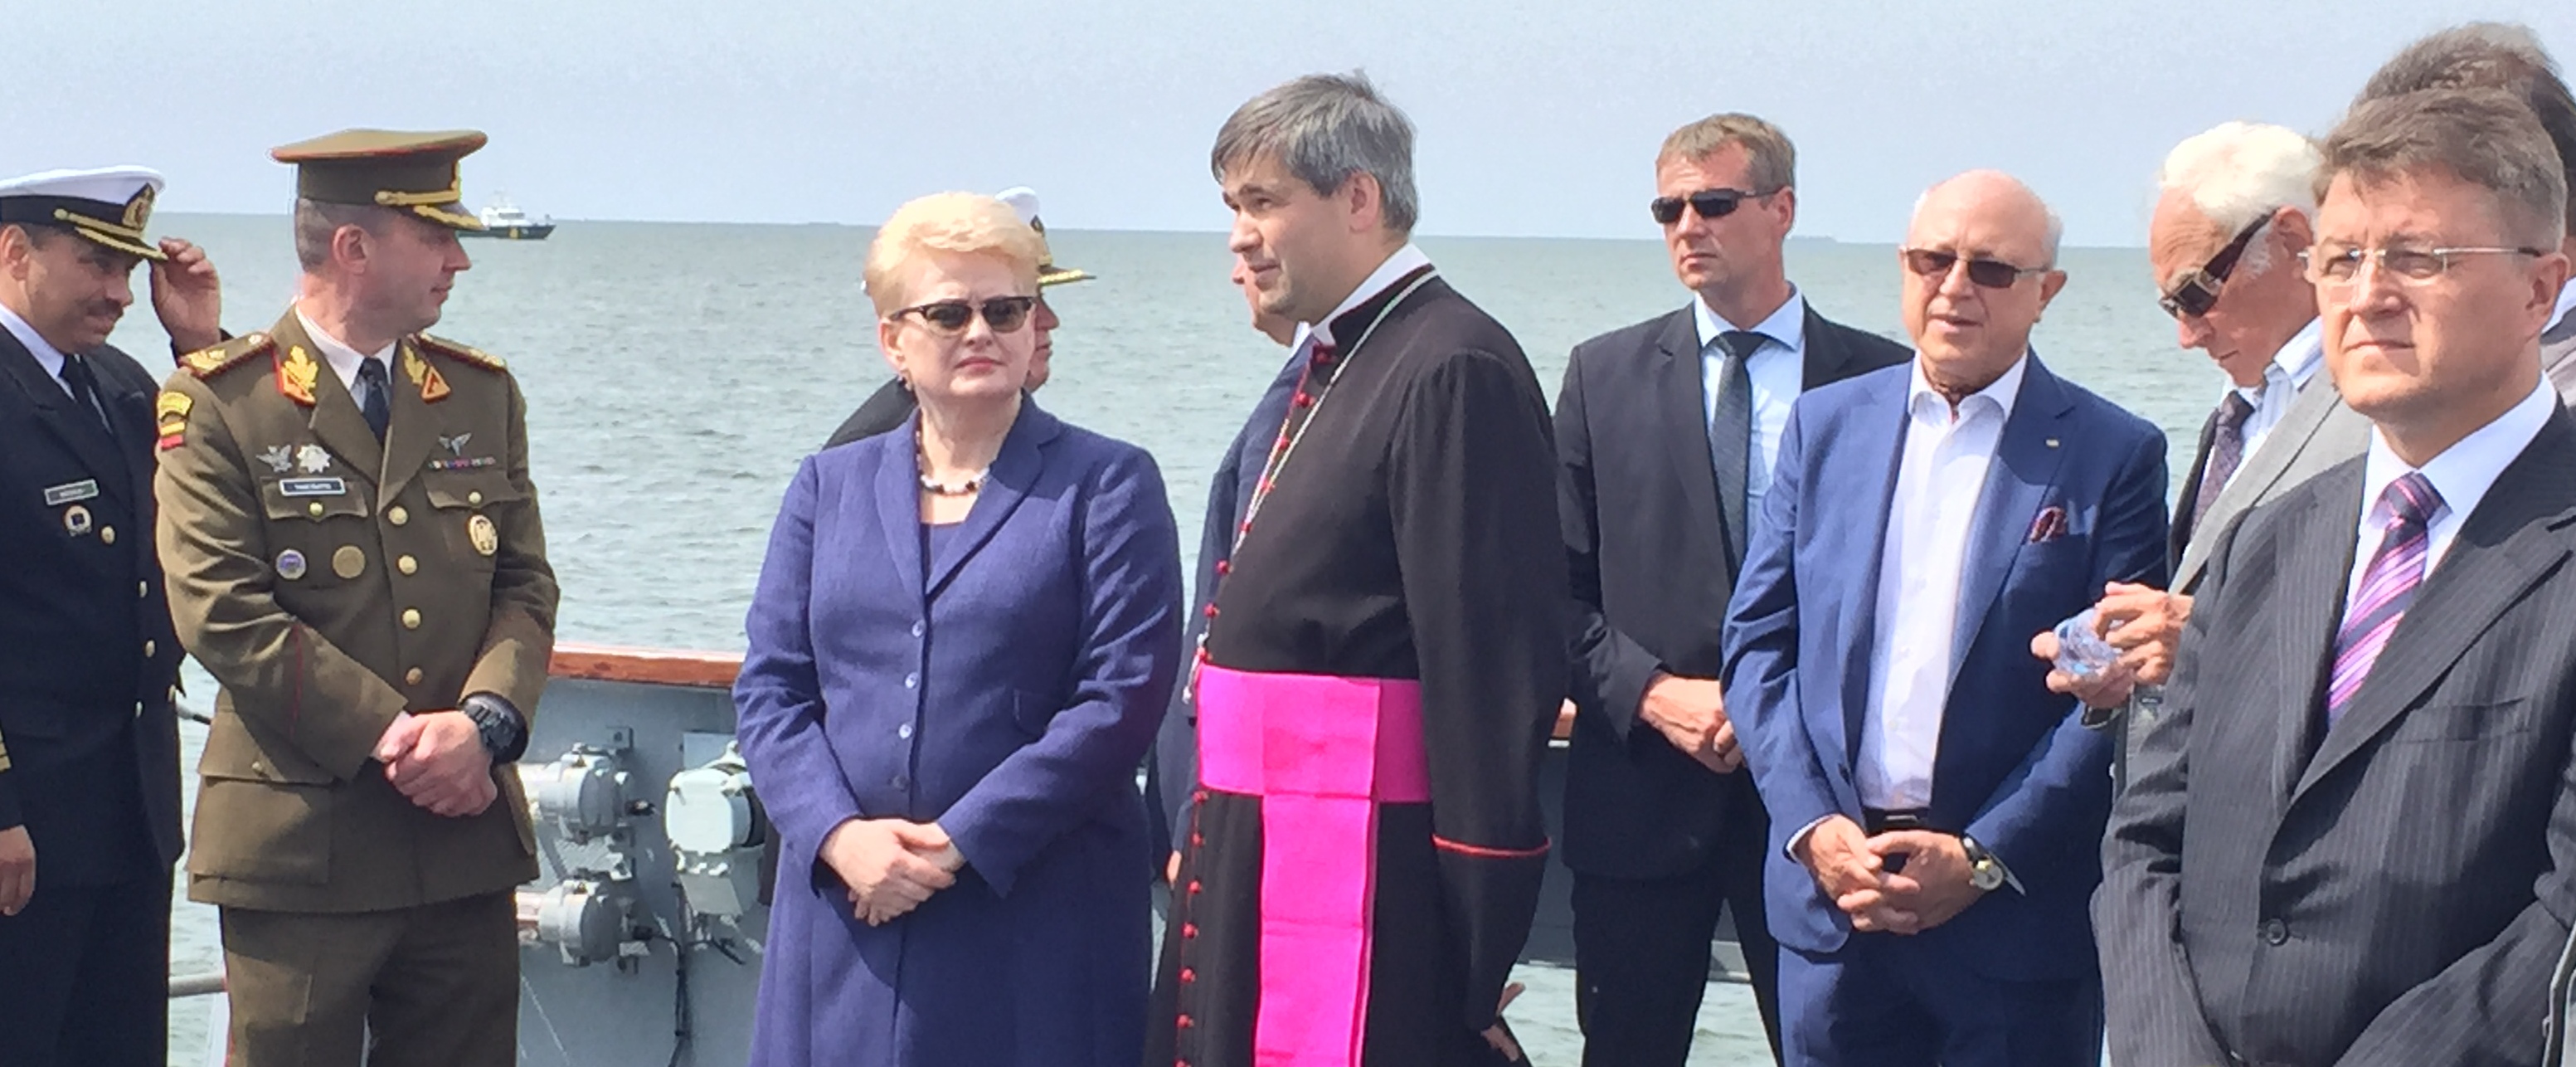 Prezidentė Klaipėdoje dalyvavo vainikų nuleidimo žuvusiesiems jūroje ceremonijoje